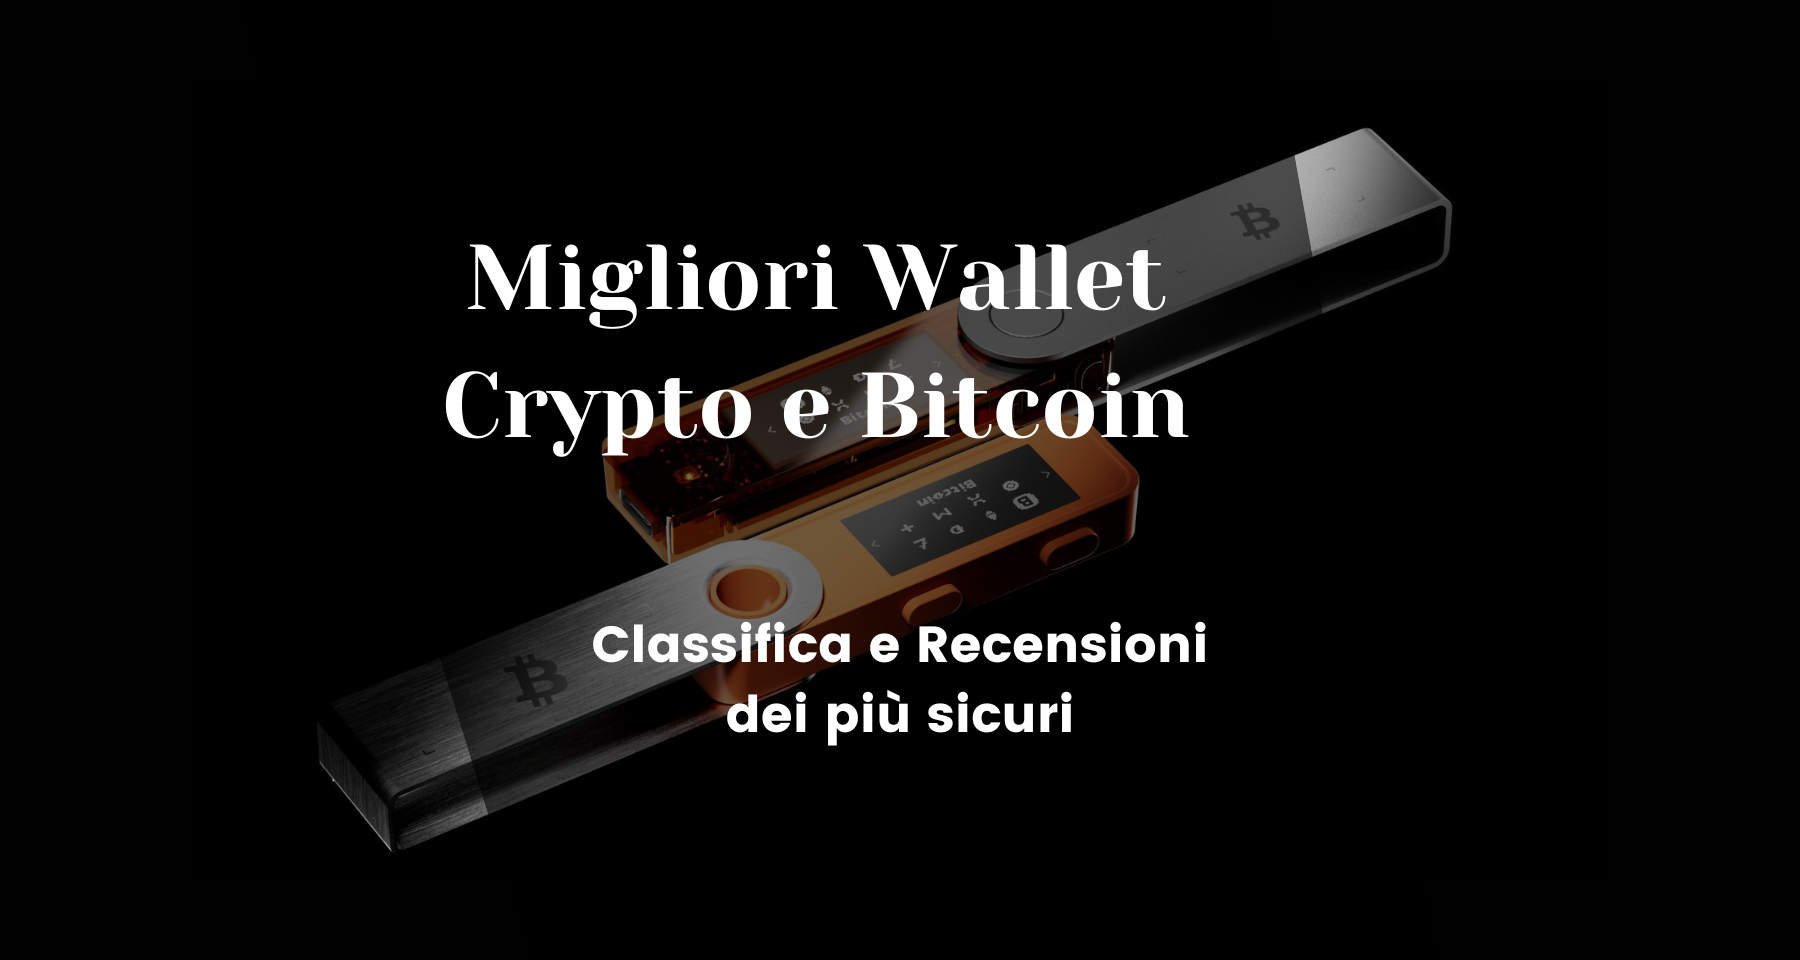 Migliori Wallet Crypto e Bitcoin